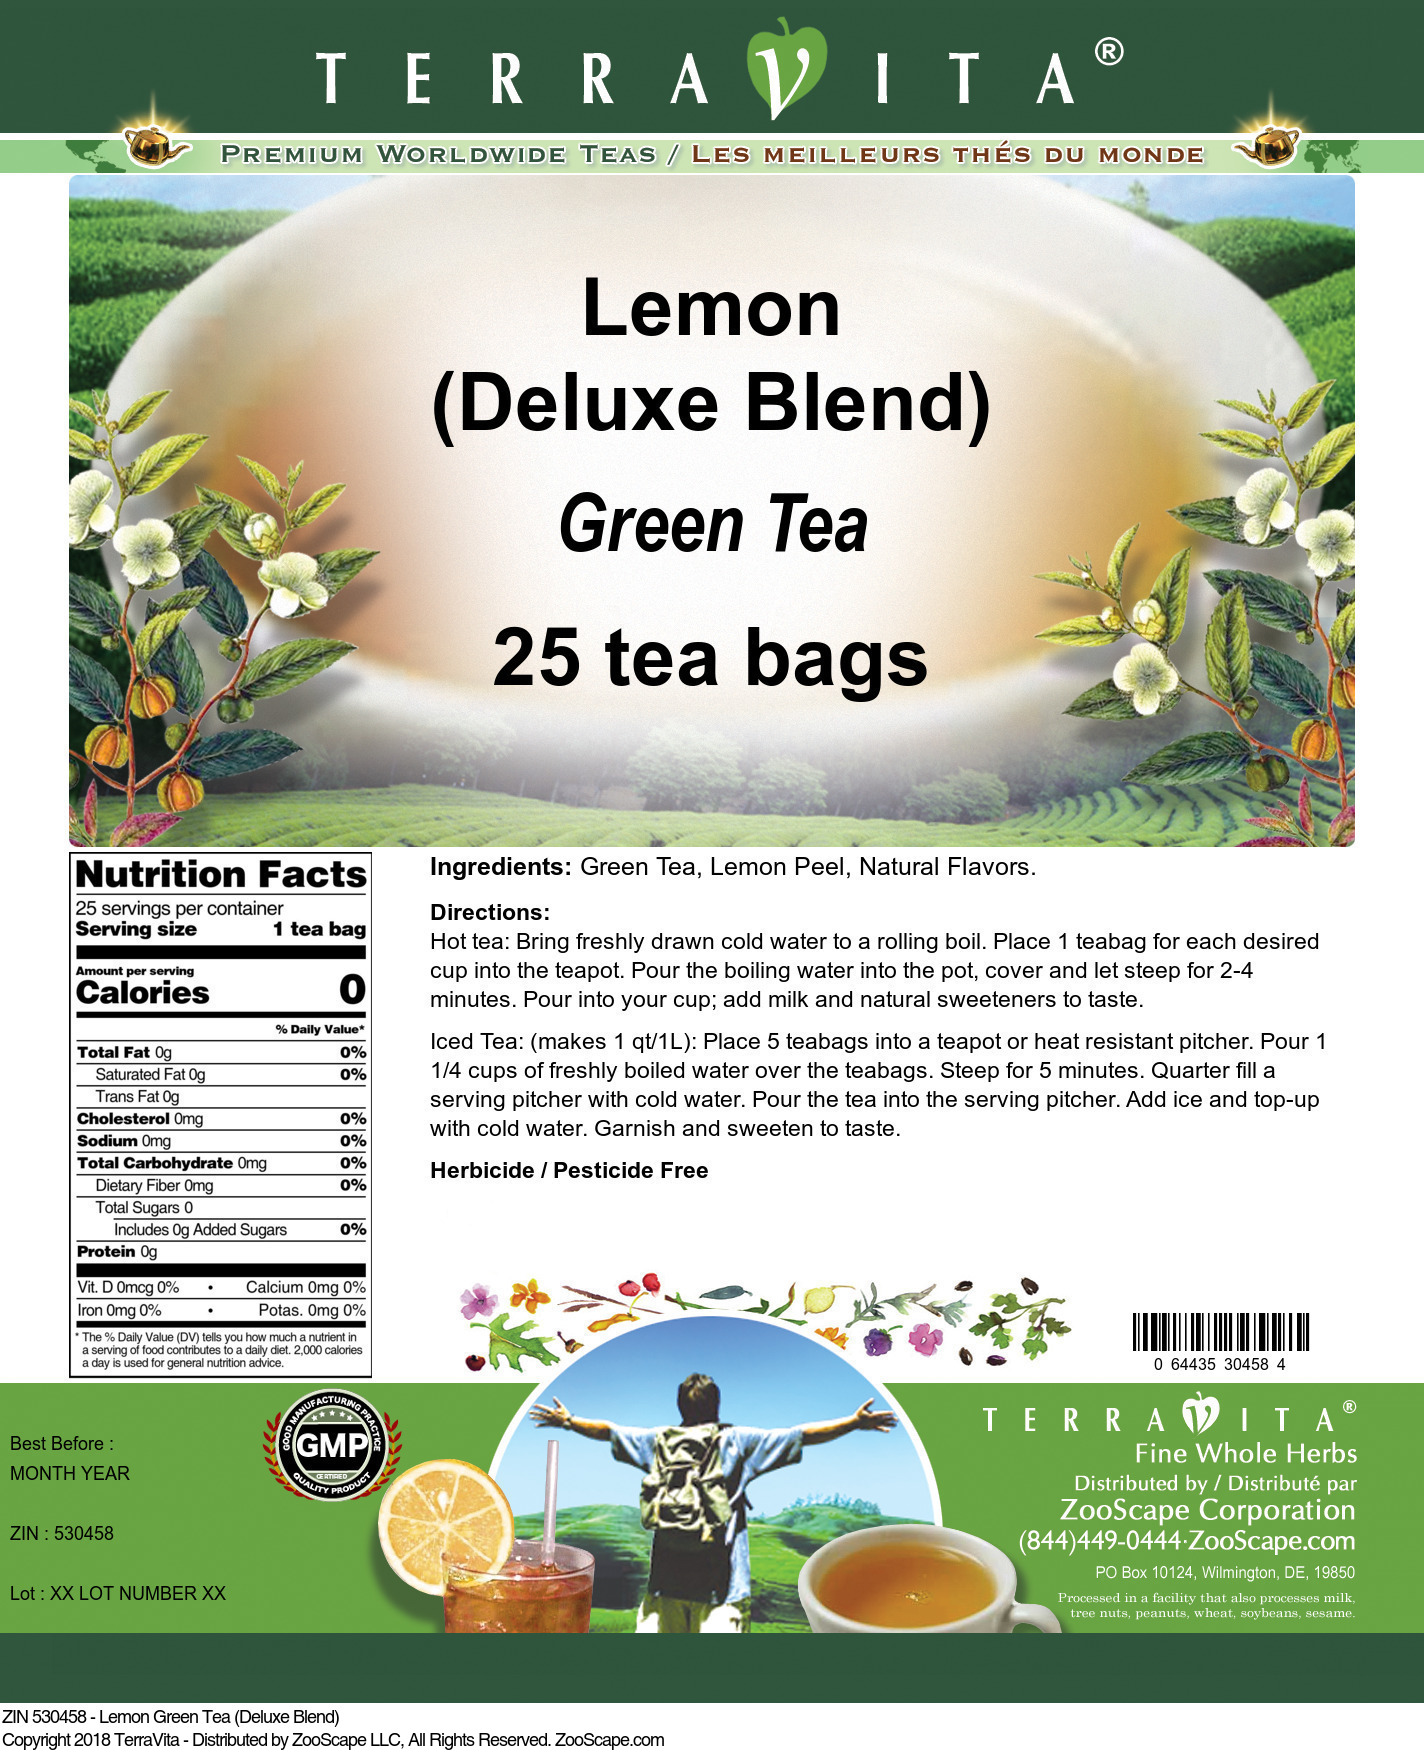 Lemon Green Tea (Deluxe Blend) - Label